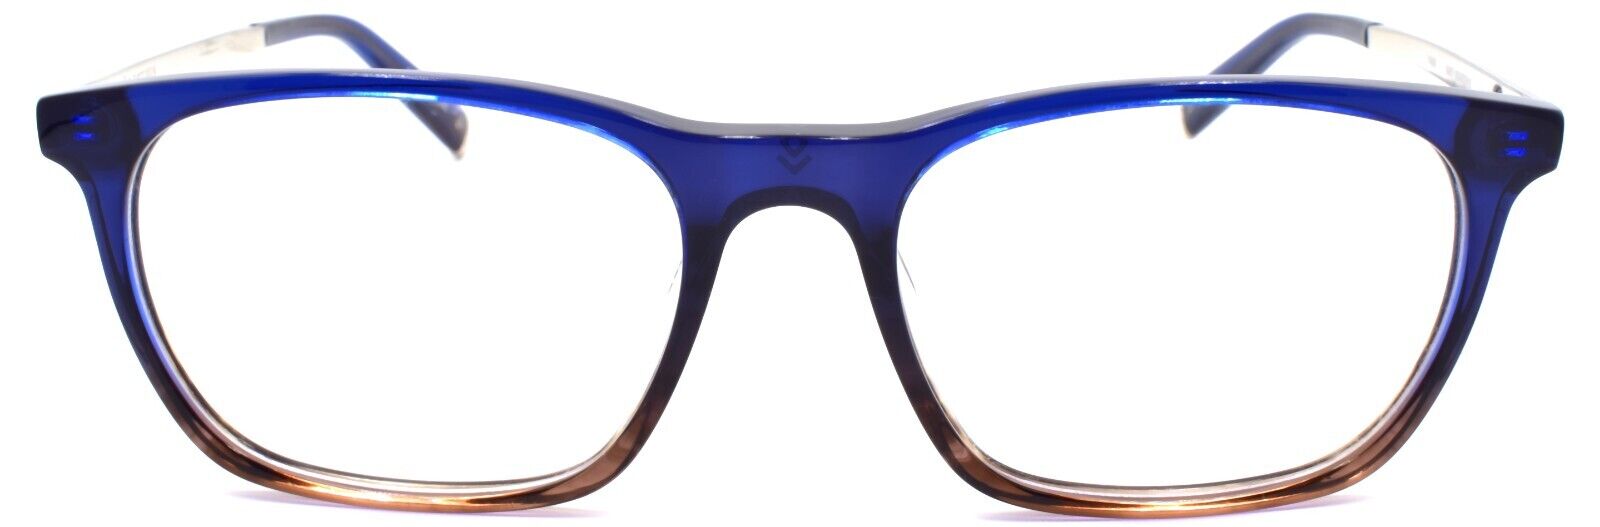 2-John Varvatos V406 Men's Eyeglasses Frames 53-18-145 Navy Gradient Japan-751286317817-IKSpecs